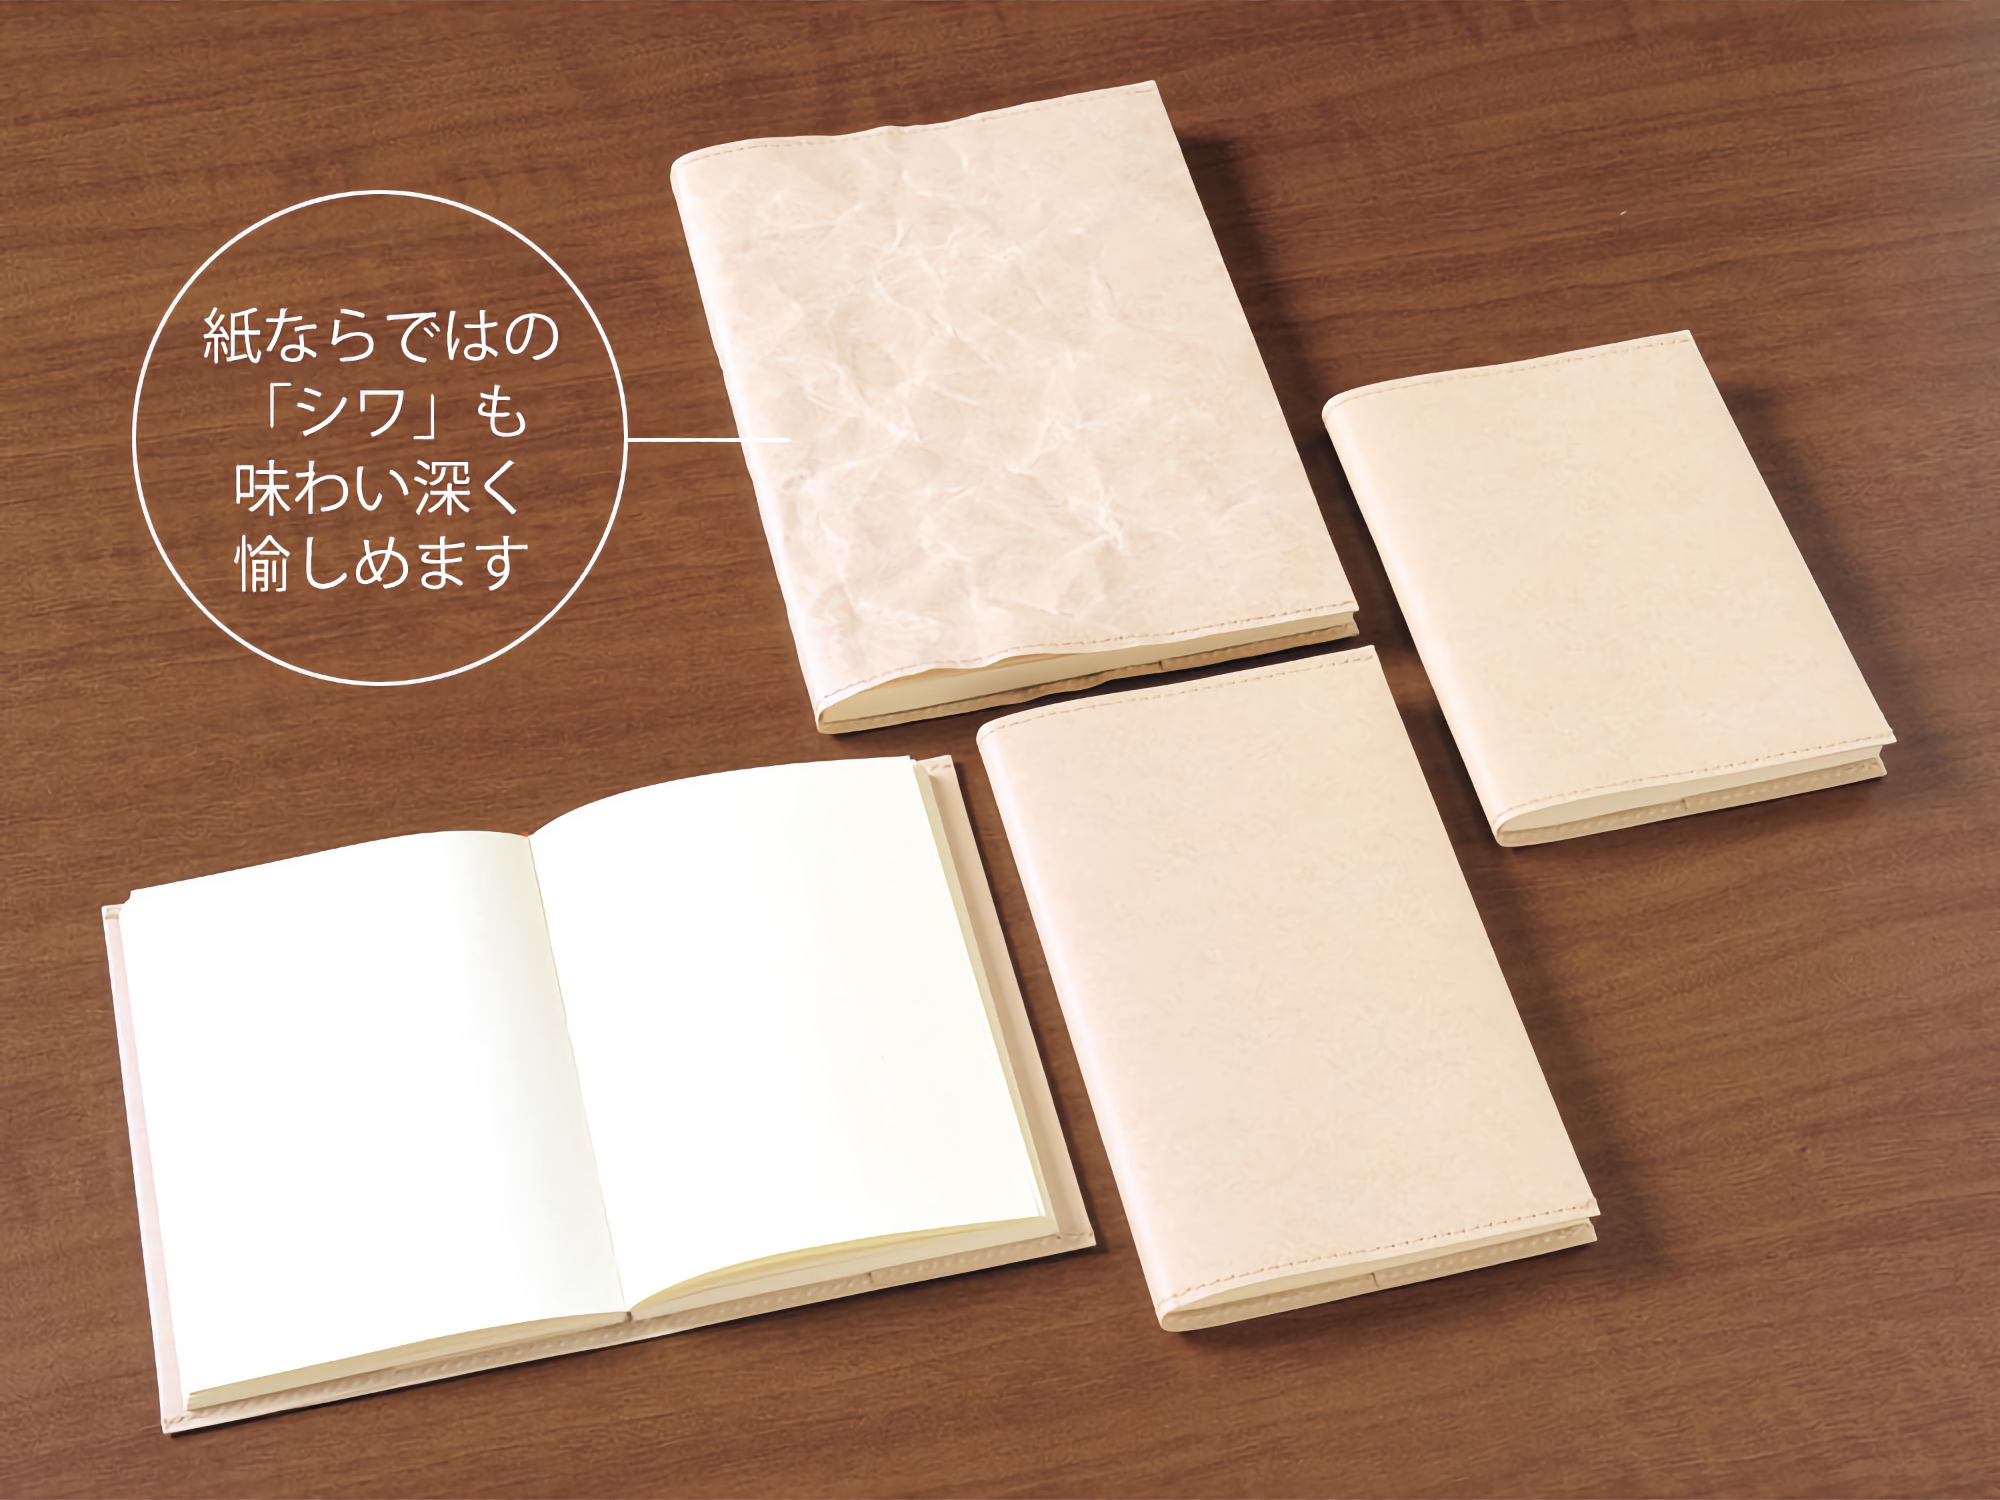 Midori MD Paper Cover [A5]